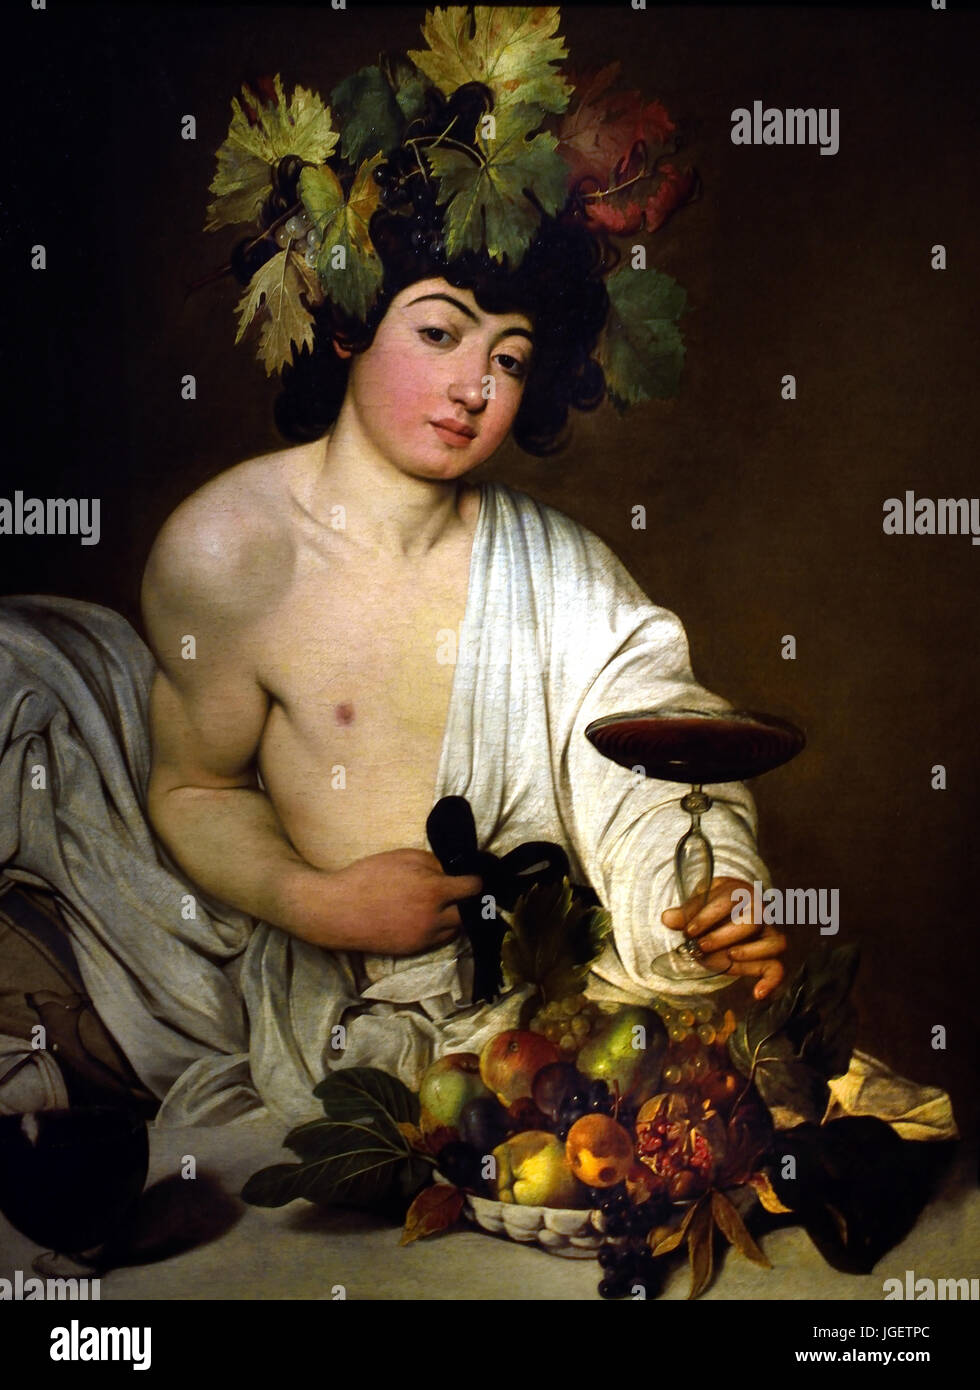 El adolescente Bacchus 1595 - 1597 Caravaggio (1571-1610), Michelangelo  Merisi da Caravaggio, nombre de nacimiento: Michelangelo Merisi. Italia  Italia Fotografía de stock - Alamy